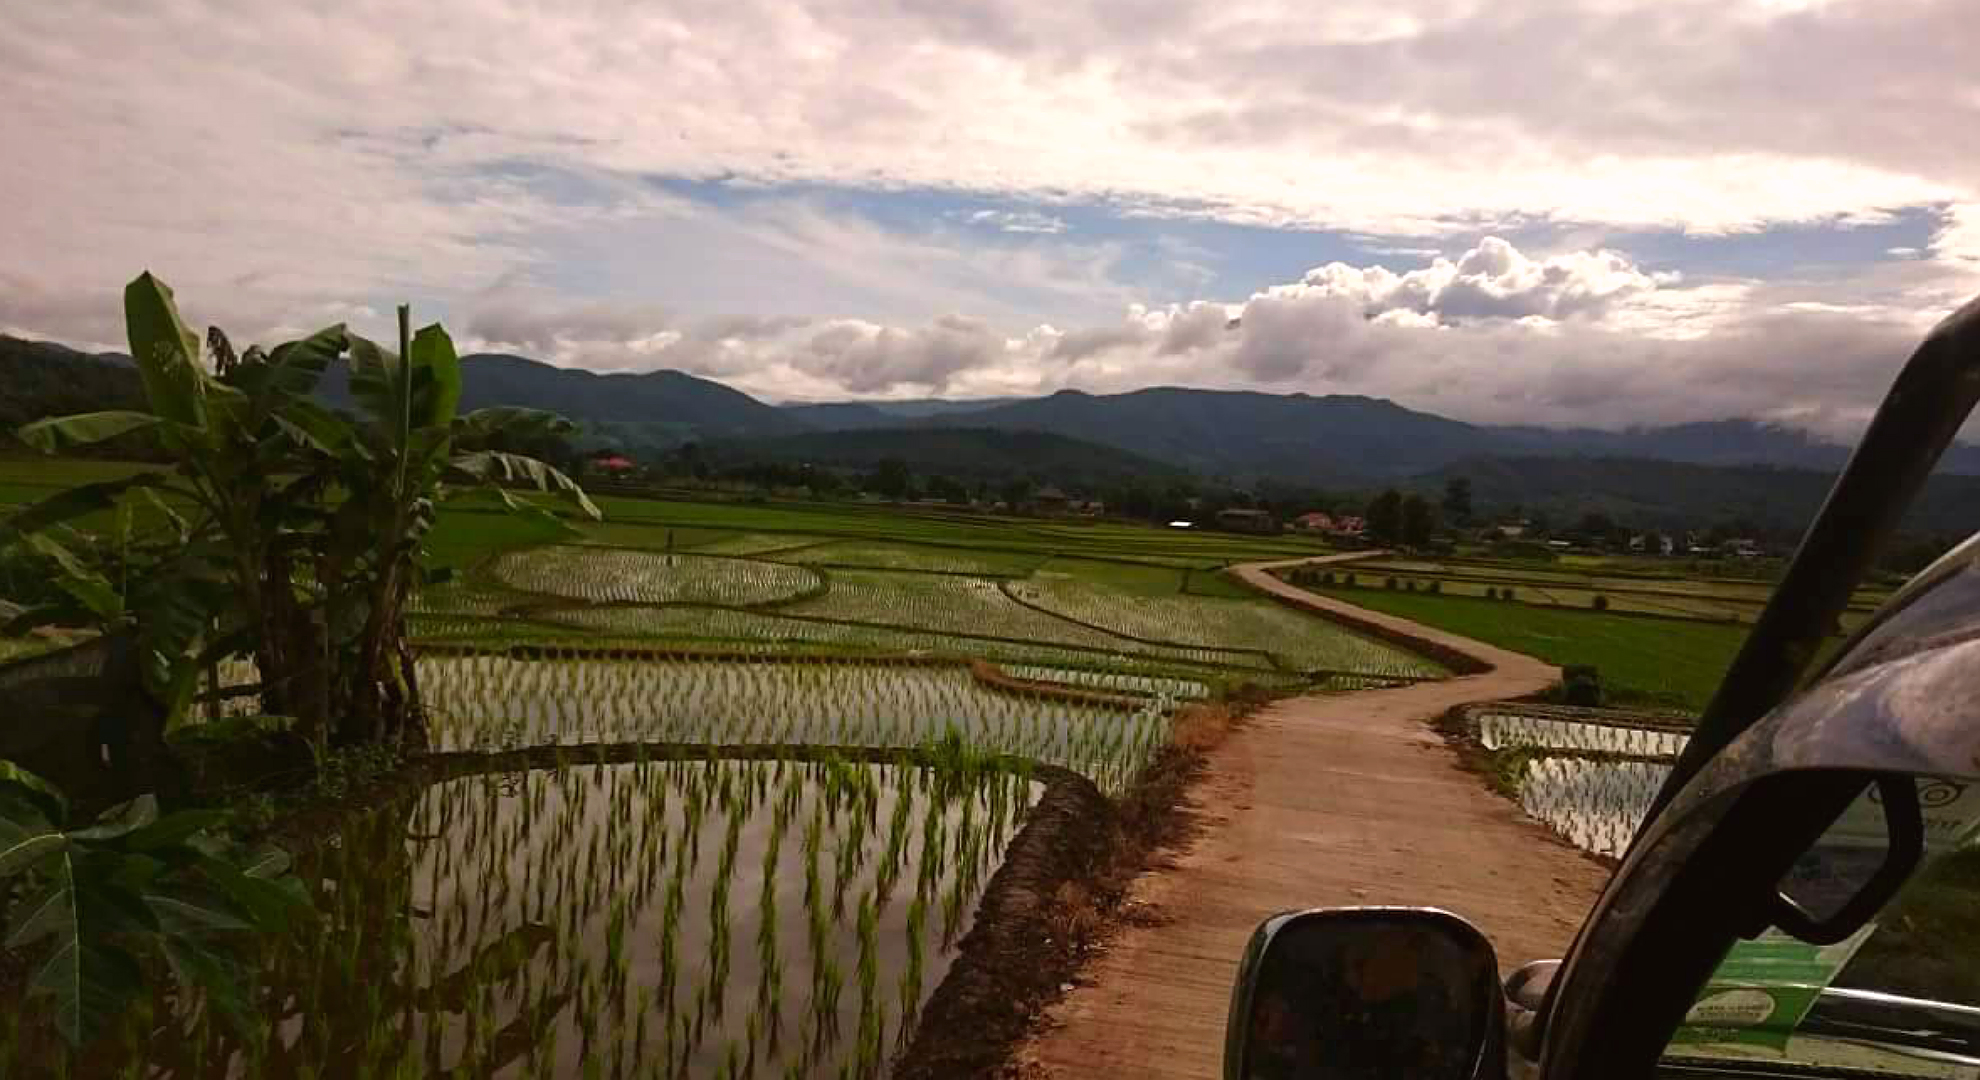 Pa Bong Piang rice paddies